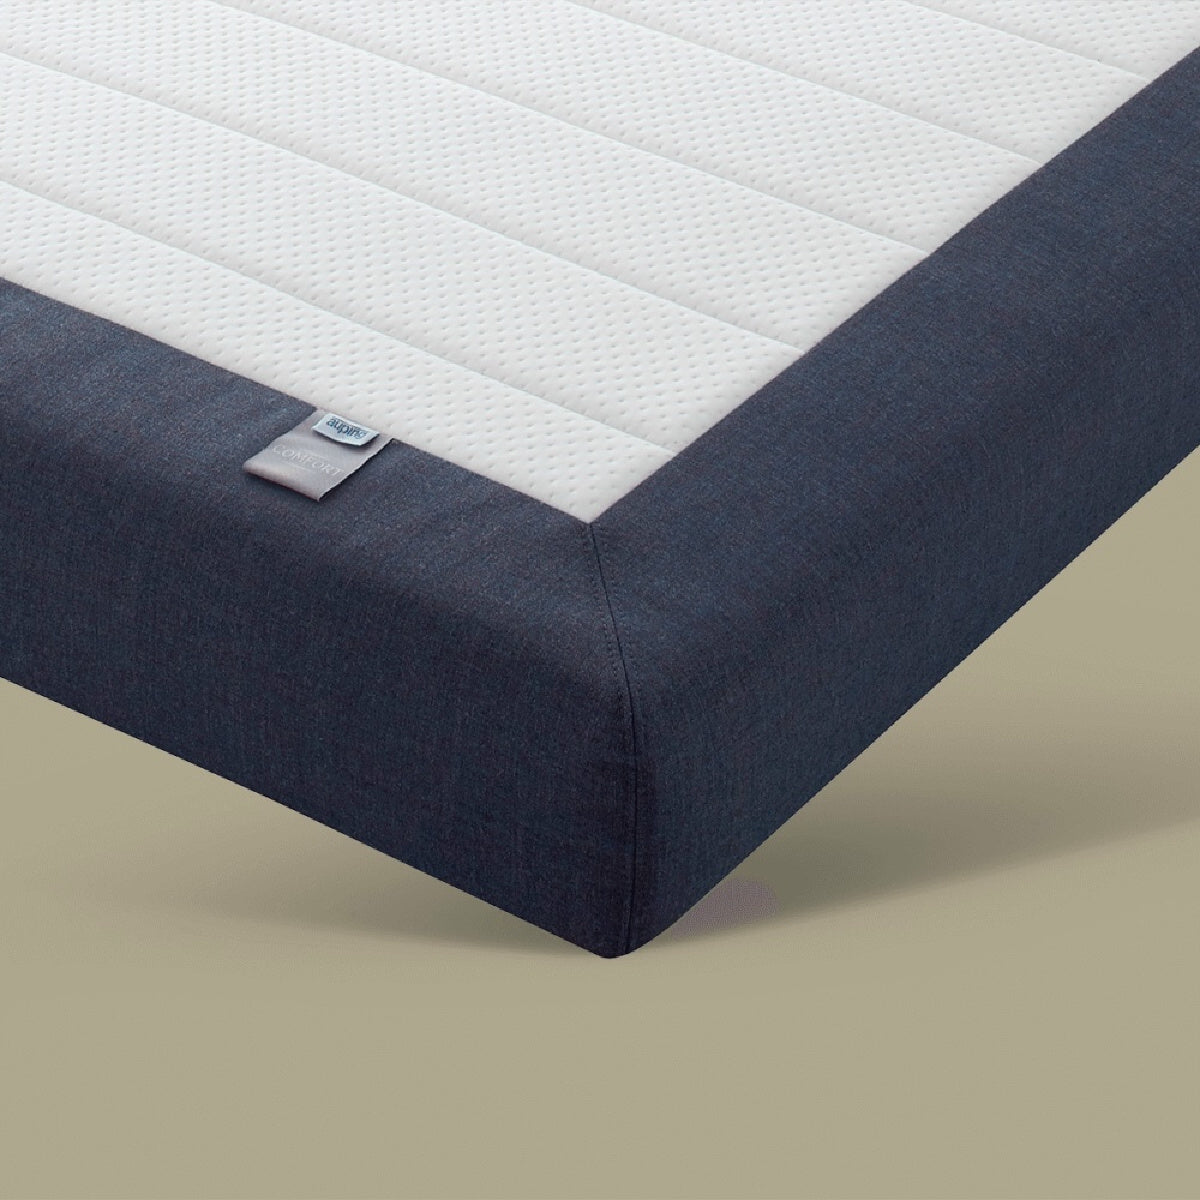 auping comfort matras-auping matelas comfort-auping mattress comfort